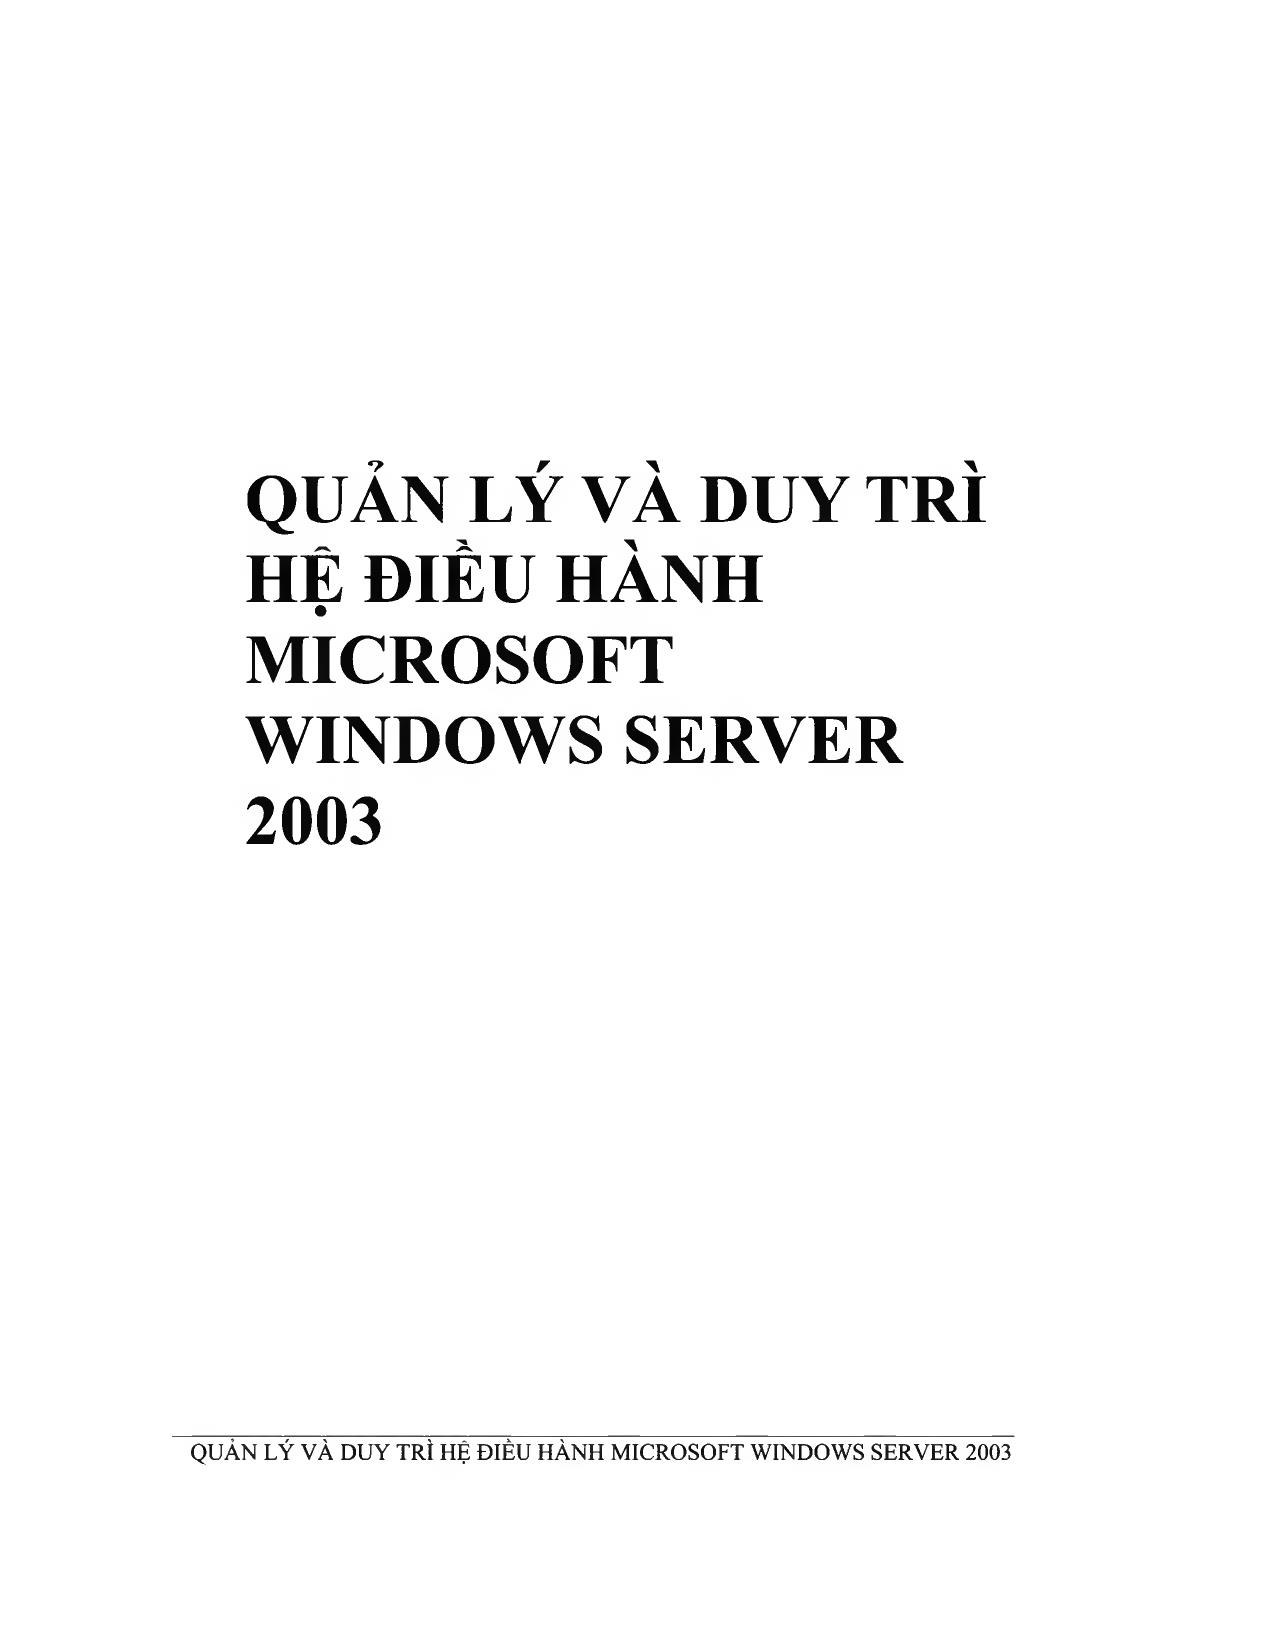 Quản lý và duy trì hệ điều hành Microsoft Windows Server 2003 trang 1